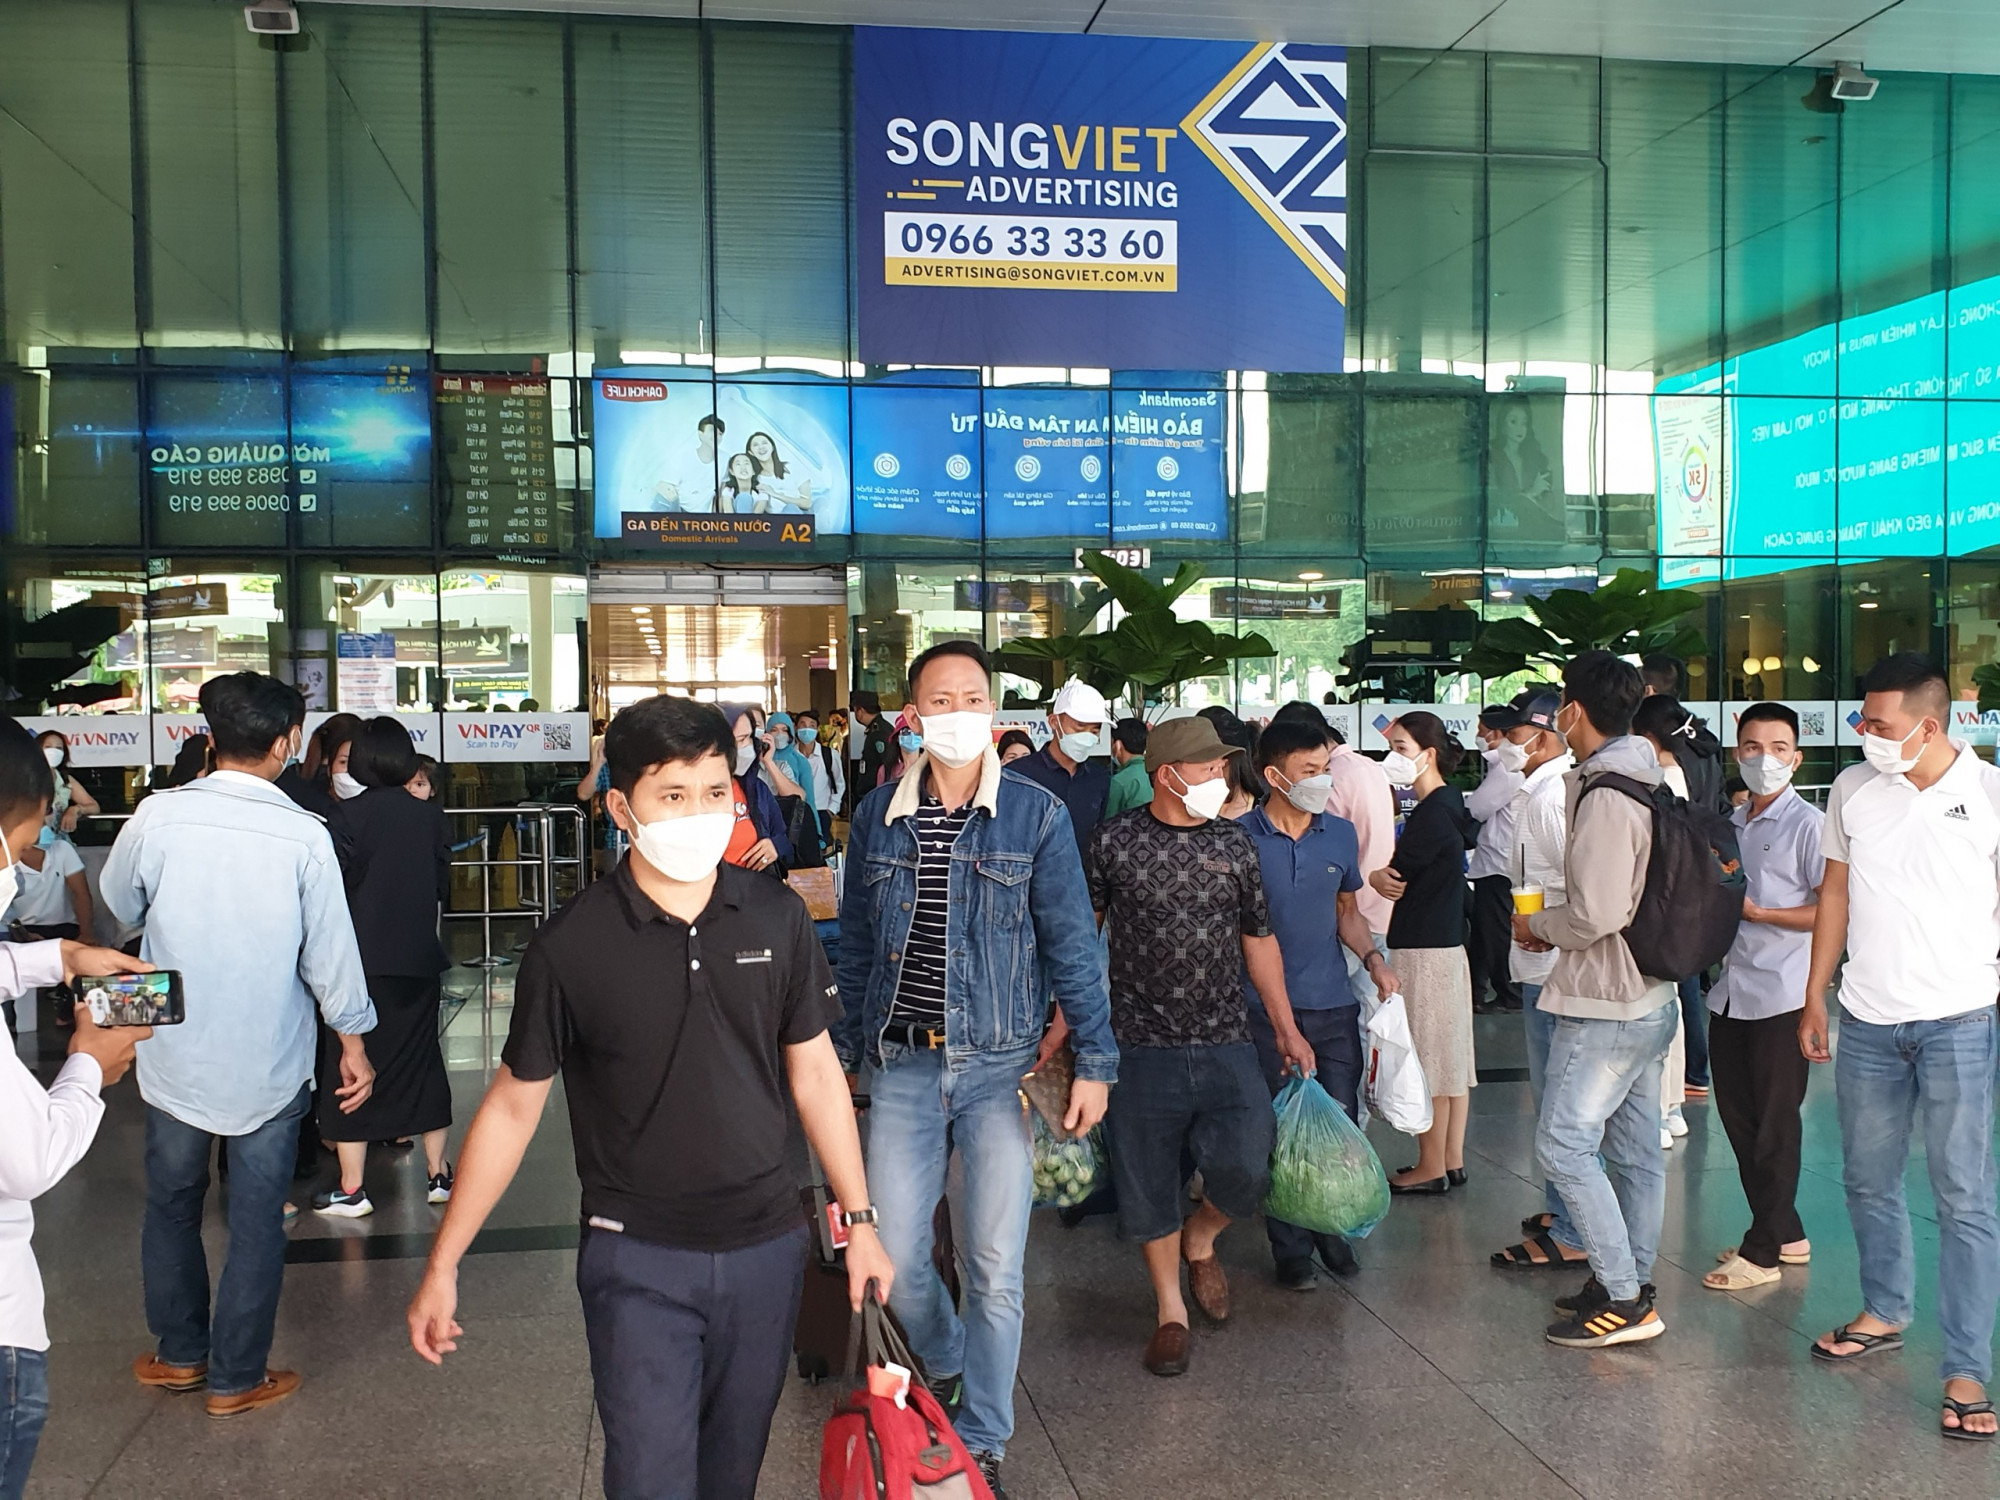 Theo Cảng vụ hàng không Miền Nam, hôm nay sân bay Tân Sơn Nhất phục vụ 561 chuyến cách, hạ cách. Trong đó, có 507 chuyến bay chở khách, ước tính hơn 75.000 lượt khách đi lại. Trong đó, khách đi đạt hơn 40.000 người và chiều đến khoảng 35.000 khách. Ga quốc nội đạt 65.000 khách và ga quốc tế phục vụ khoảng 10.000 khách.